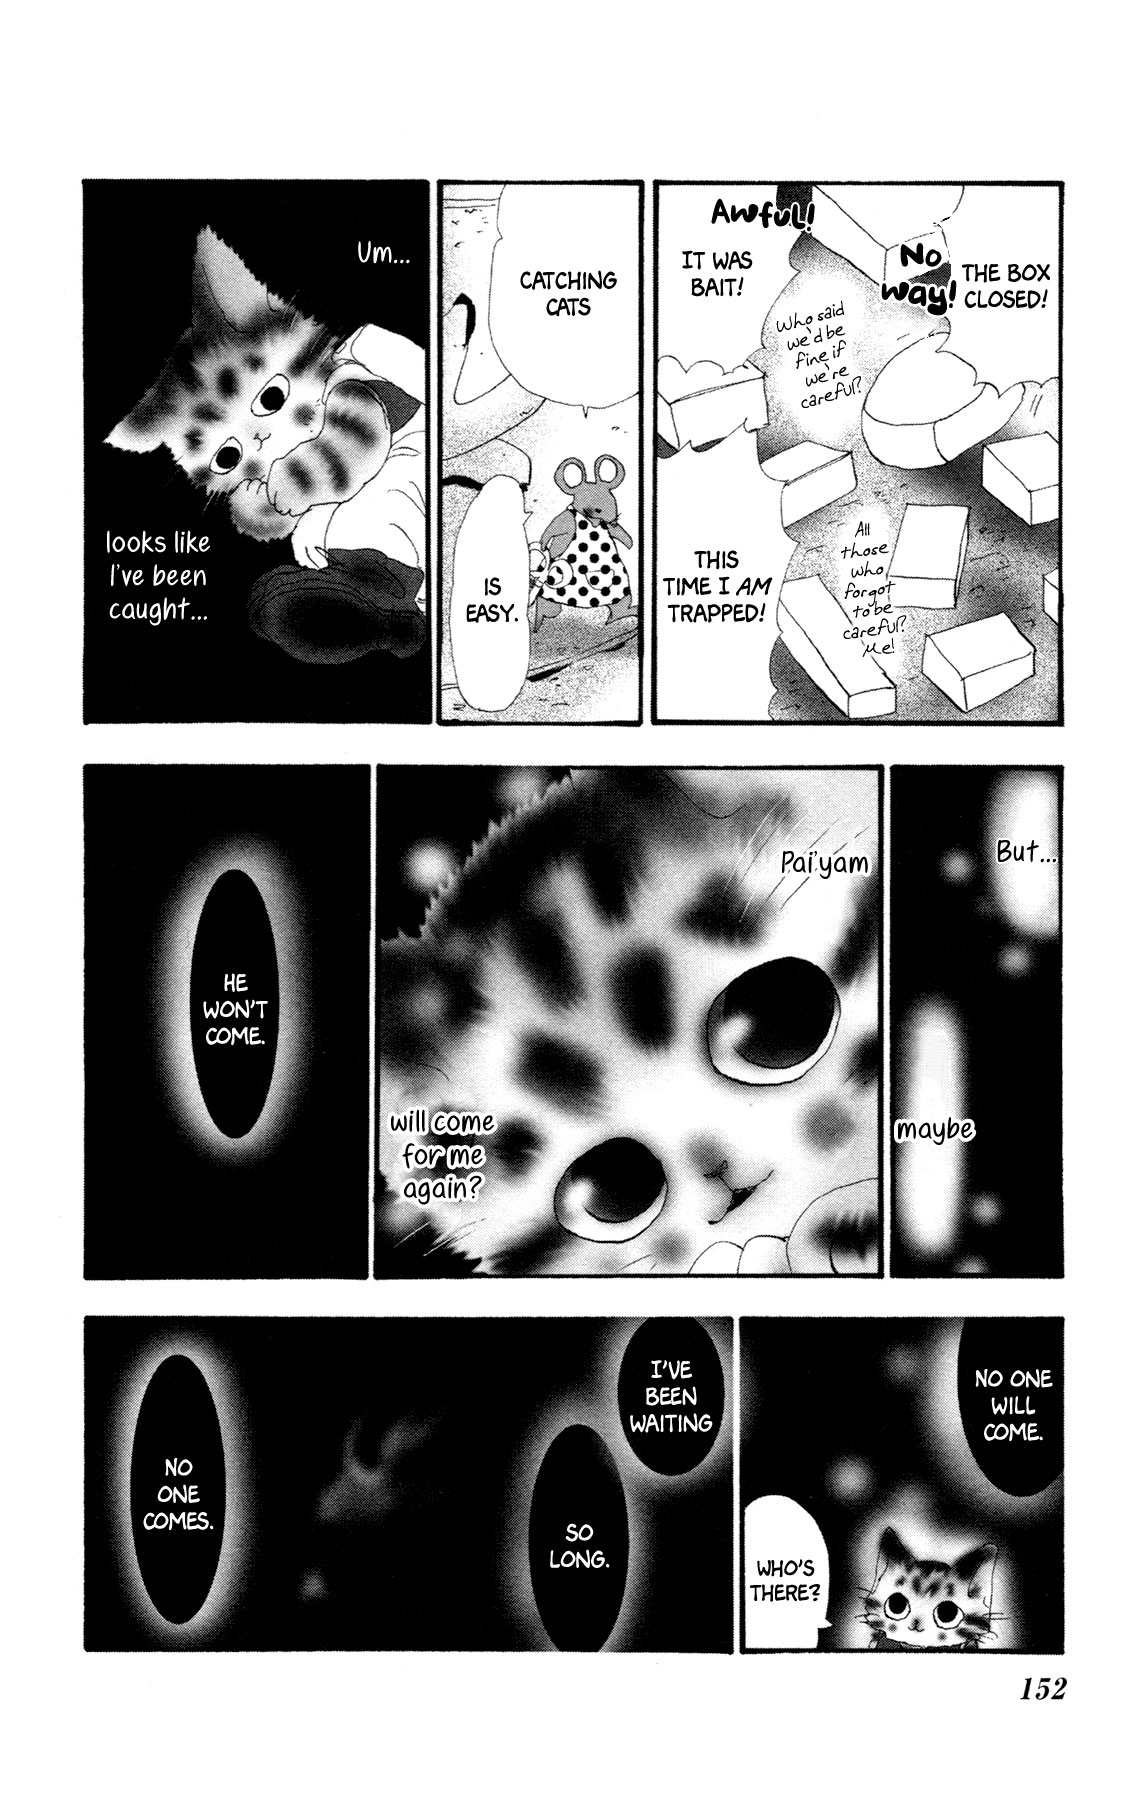 Neko Mix Genkitan Toraji Vol. 3 Ch. 11 The Dog, the Cat, and the Magic Mouse?